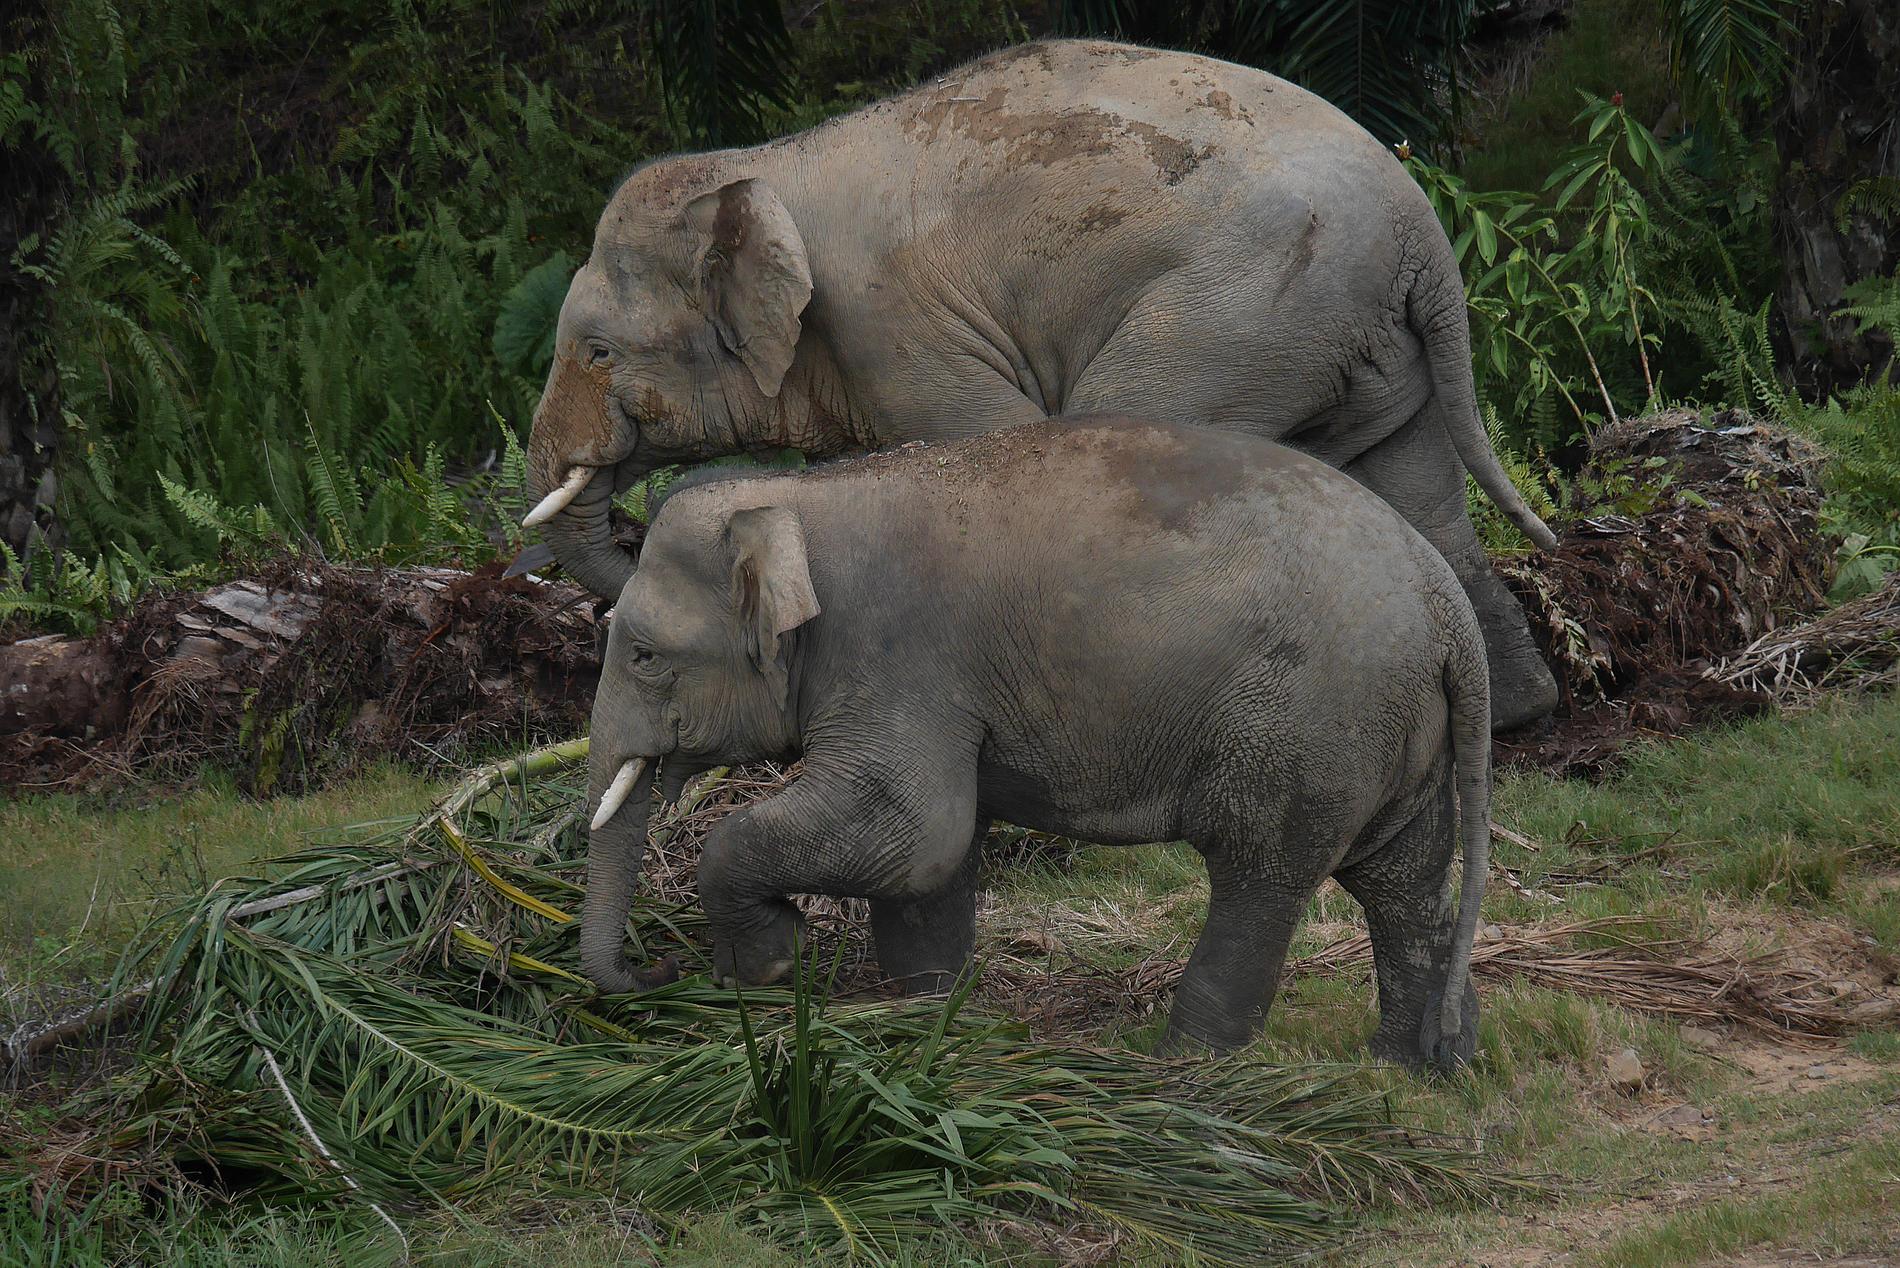 Två dvärgelefanter på Borneo undersöker om det finns något ätbart bland oljepalmsbladen. Dvärgelefanten hör till de få djur som kan utnyttja oljepalmerna.